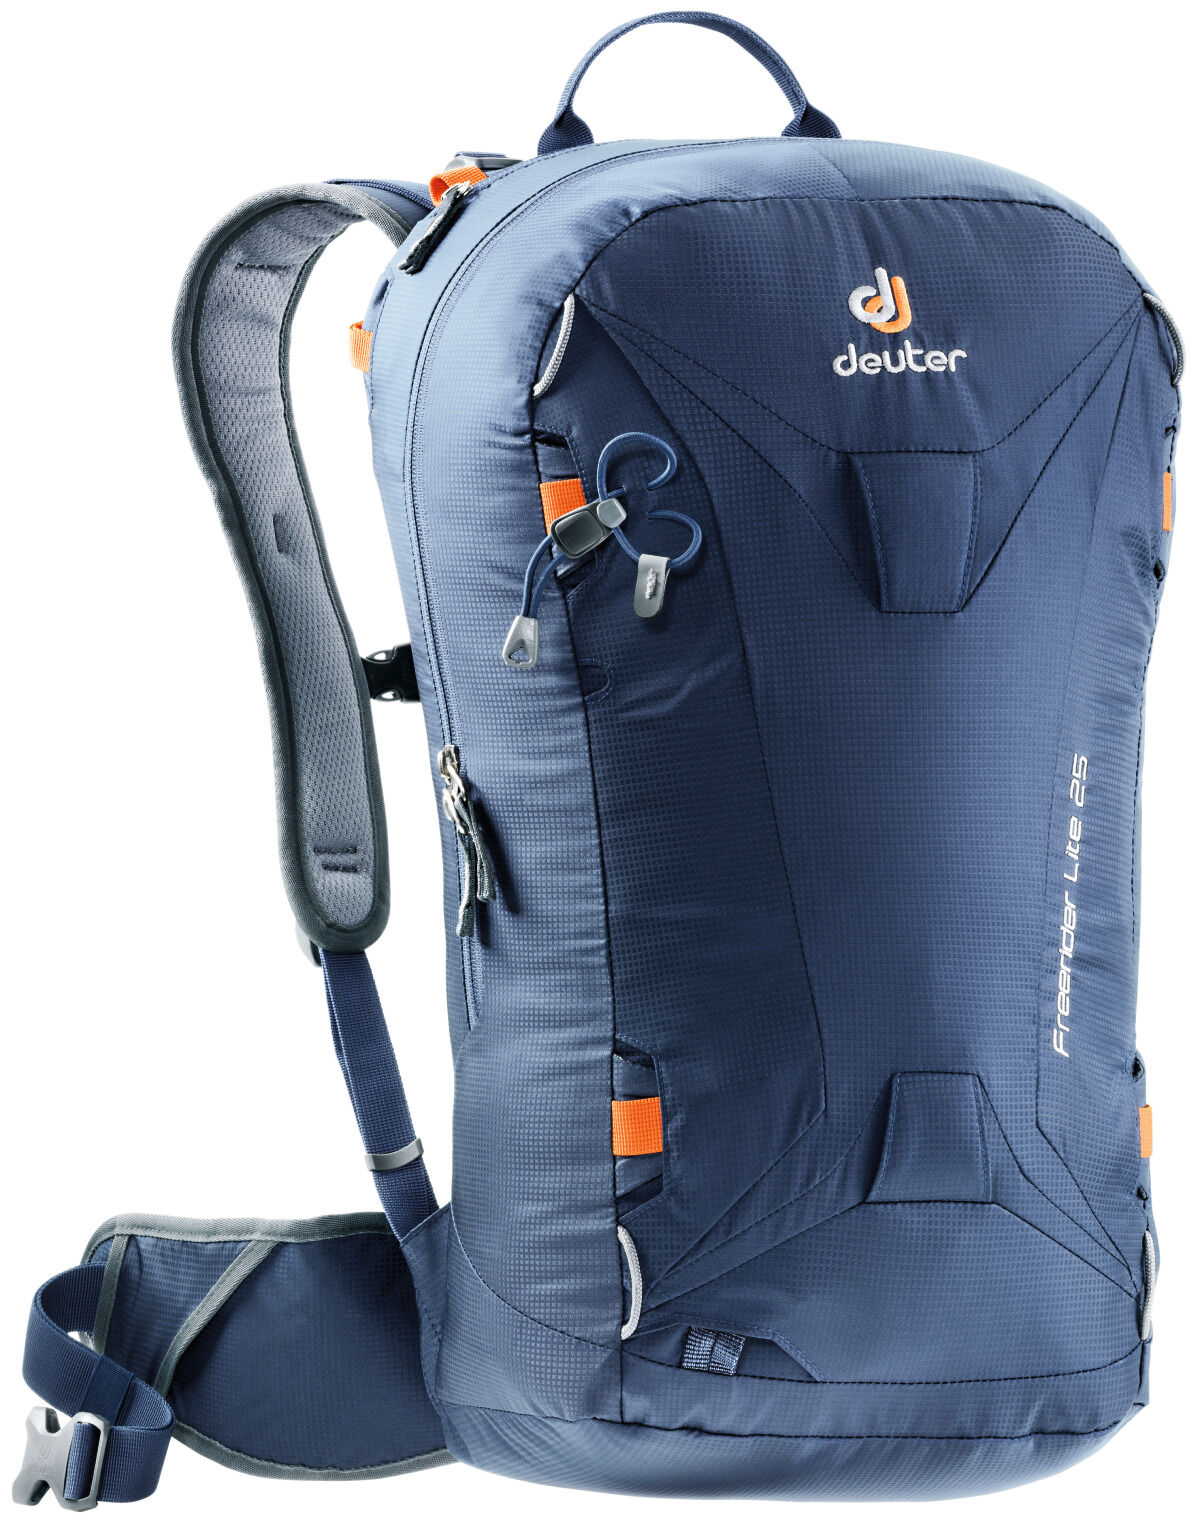 Deuter - Freerider Lite 25 - Ski Touring backpack